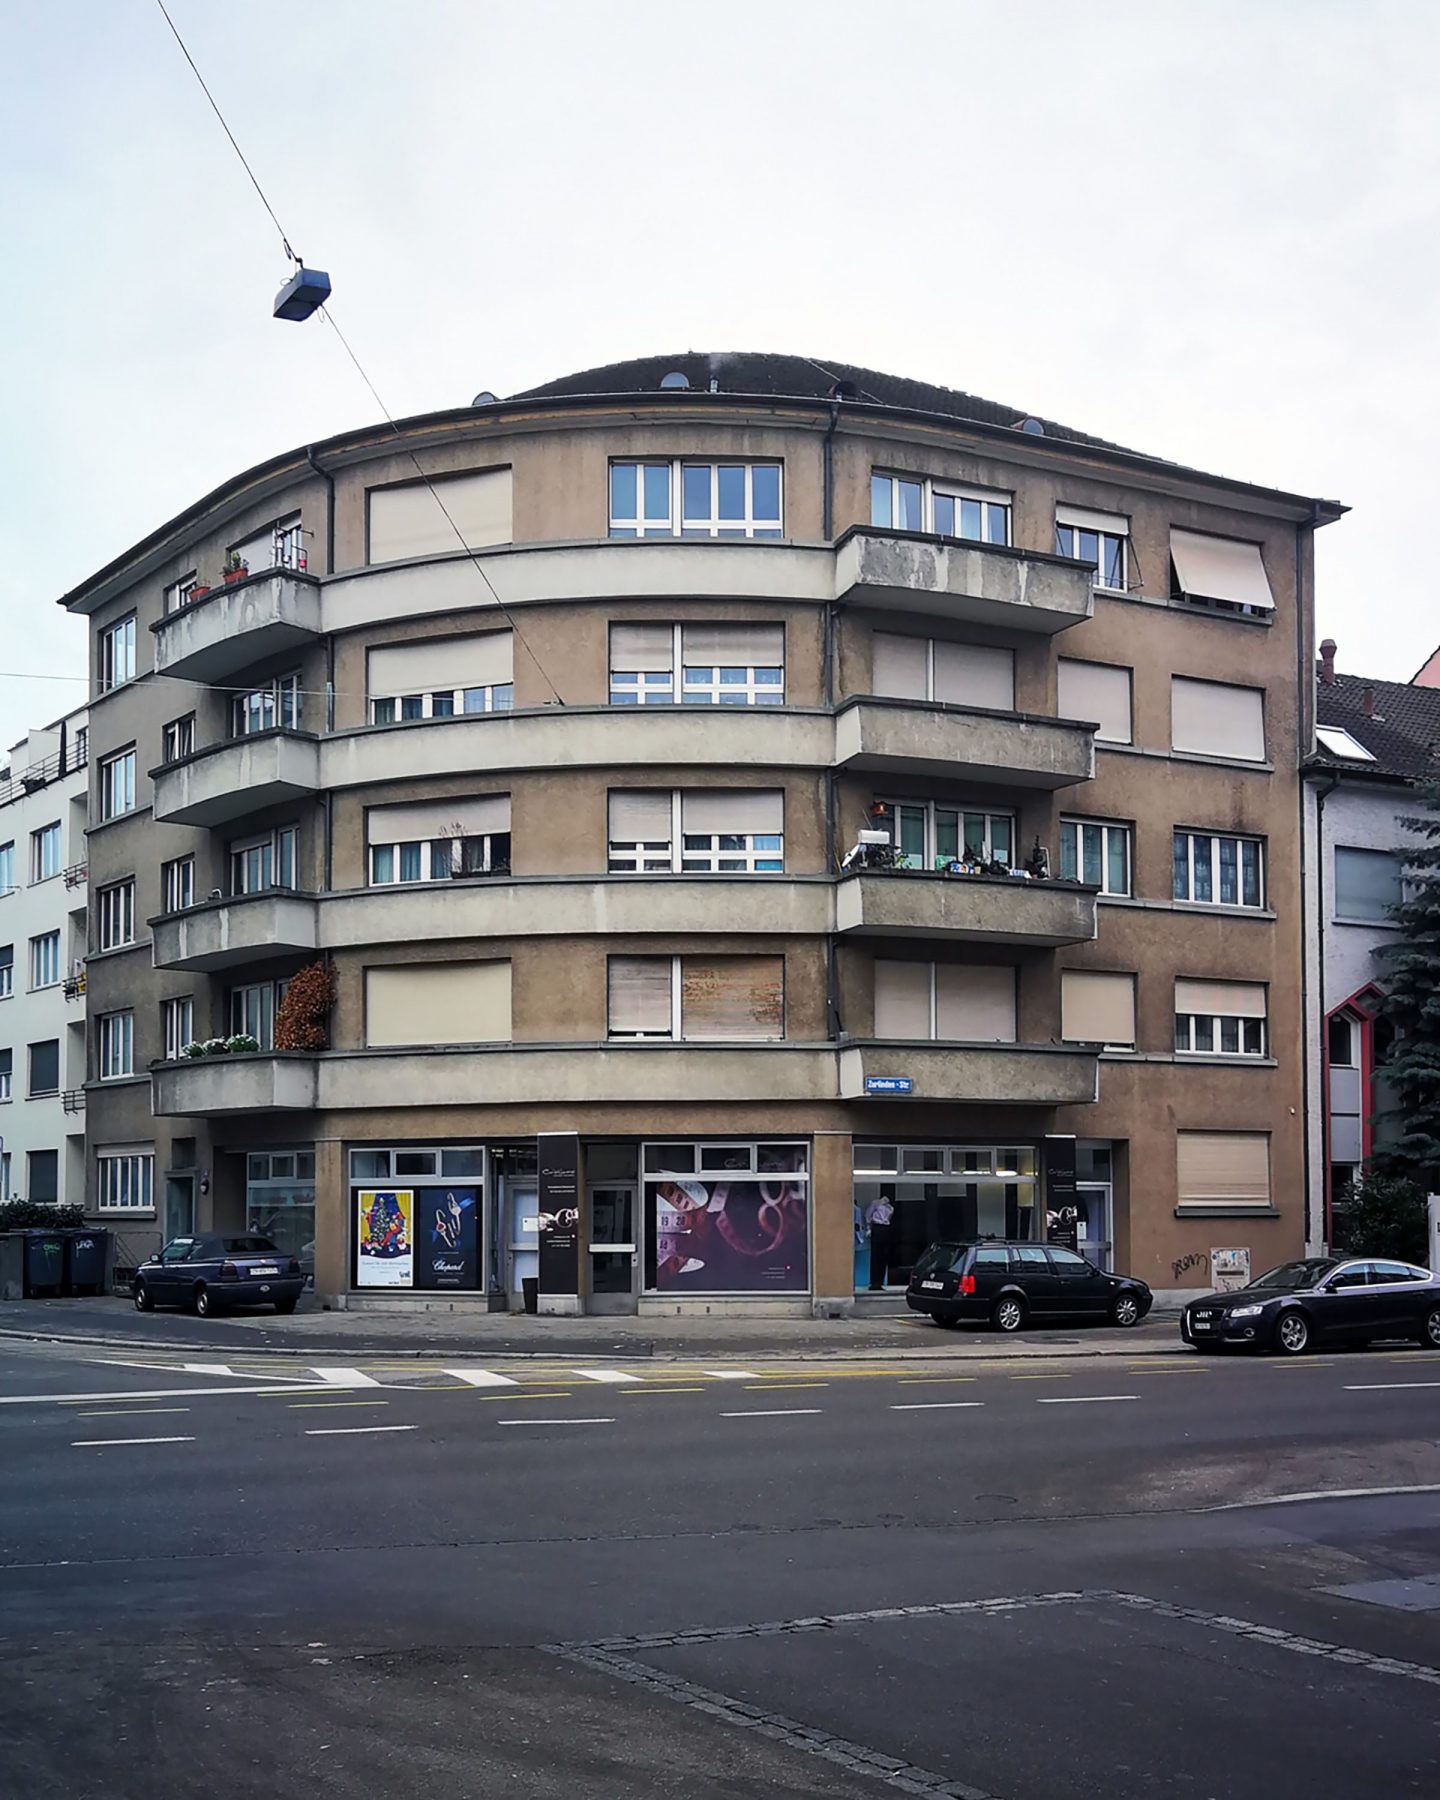 Bremgartnerstrasse, Zürich, ZH. Hildebrand Studios AG, Architecture and Urban Design in Zurich, Switzerland